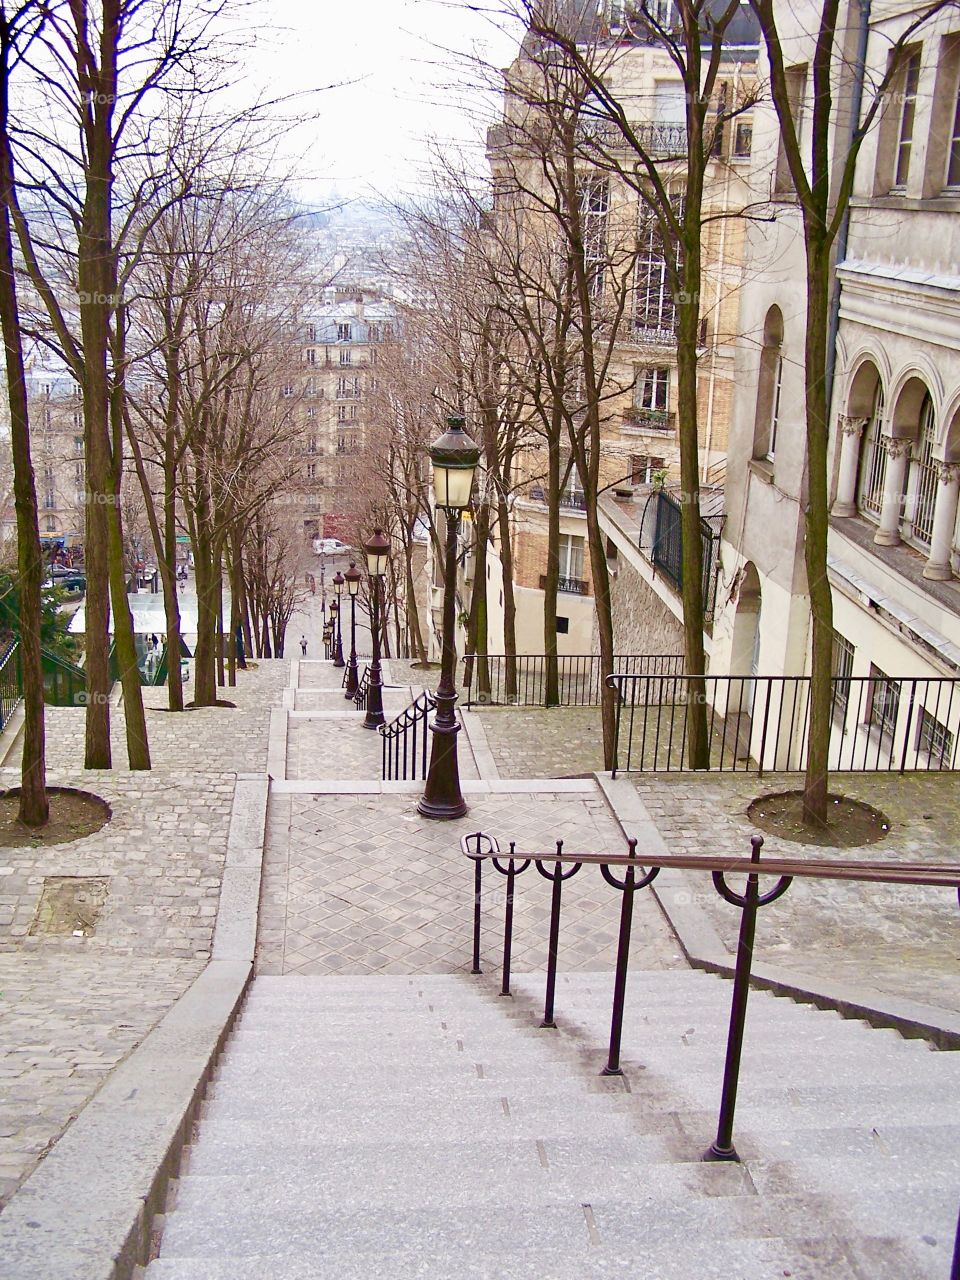 Montmartre stairway, Paris, France